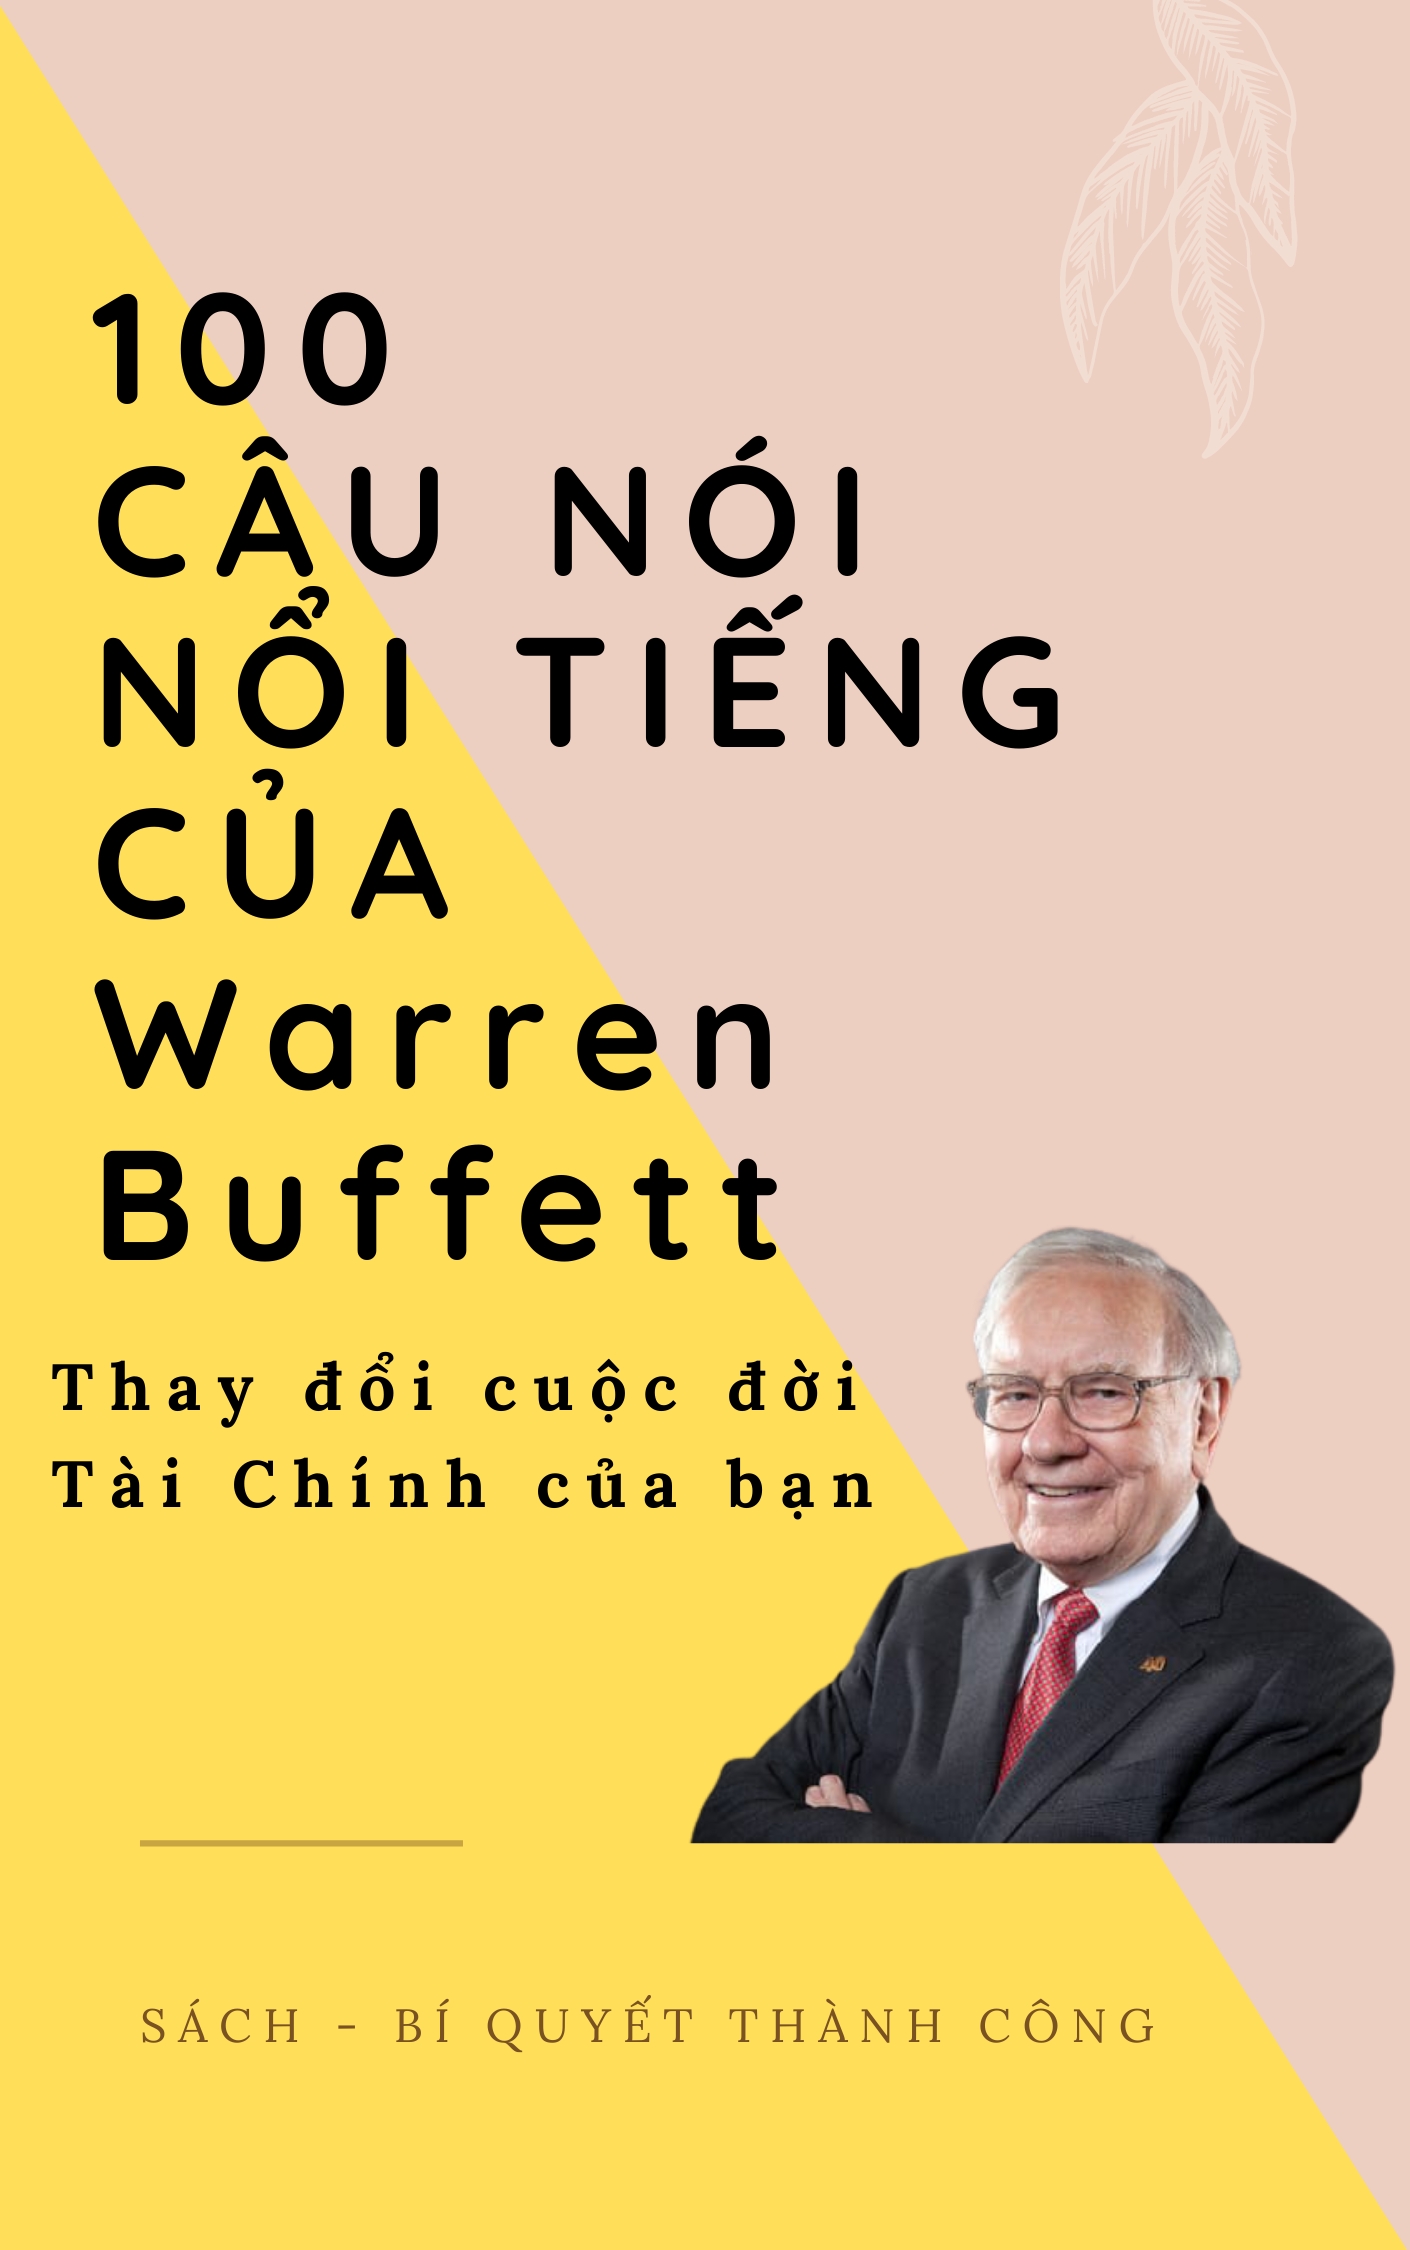 100 Câu nói nổi tiếng của Warren Buffett sẽ Thay đổi cuộc đời Tài Chính của bạn! cover